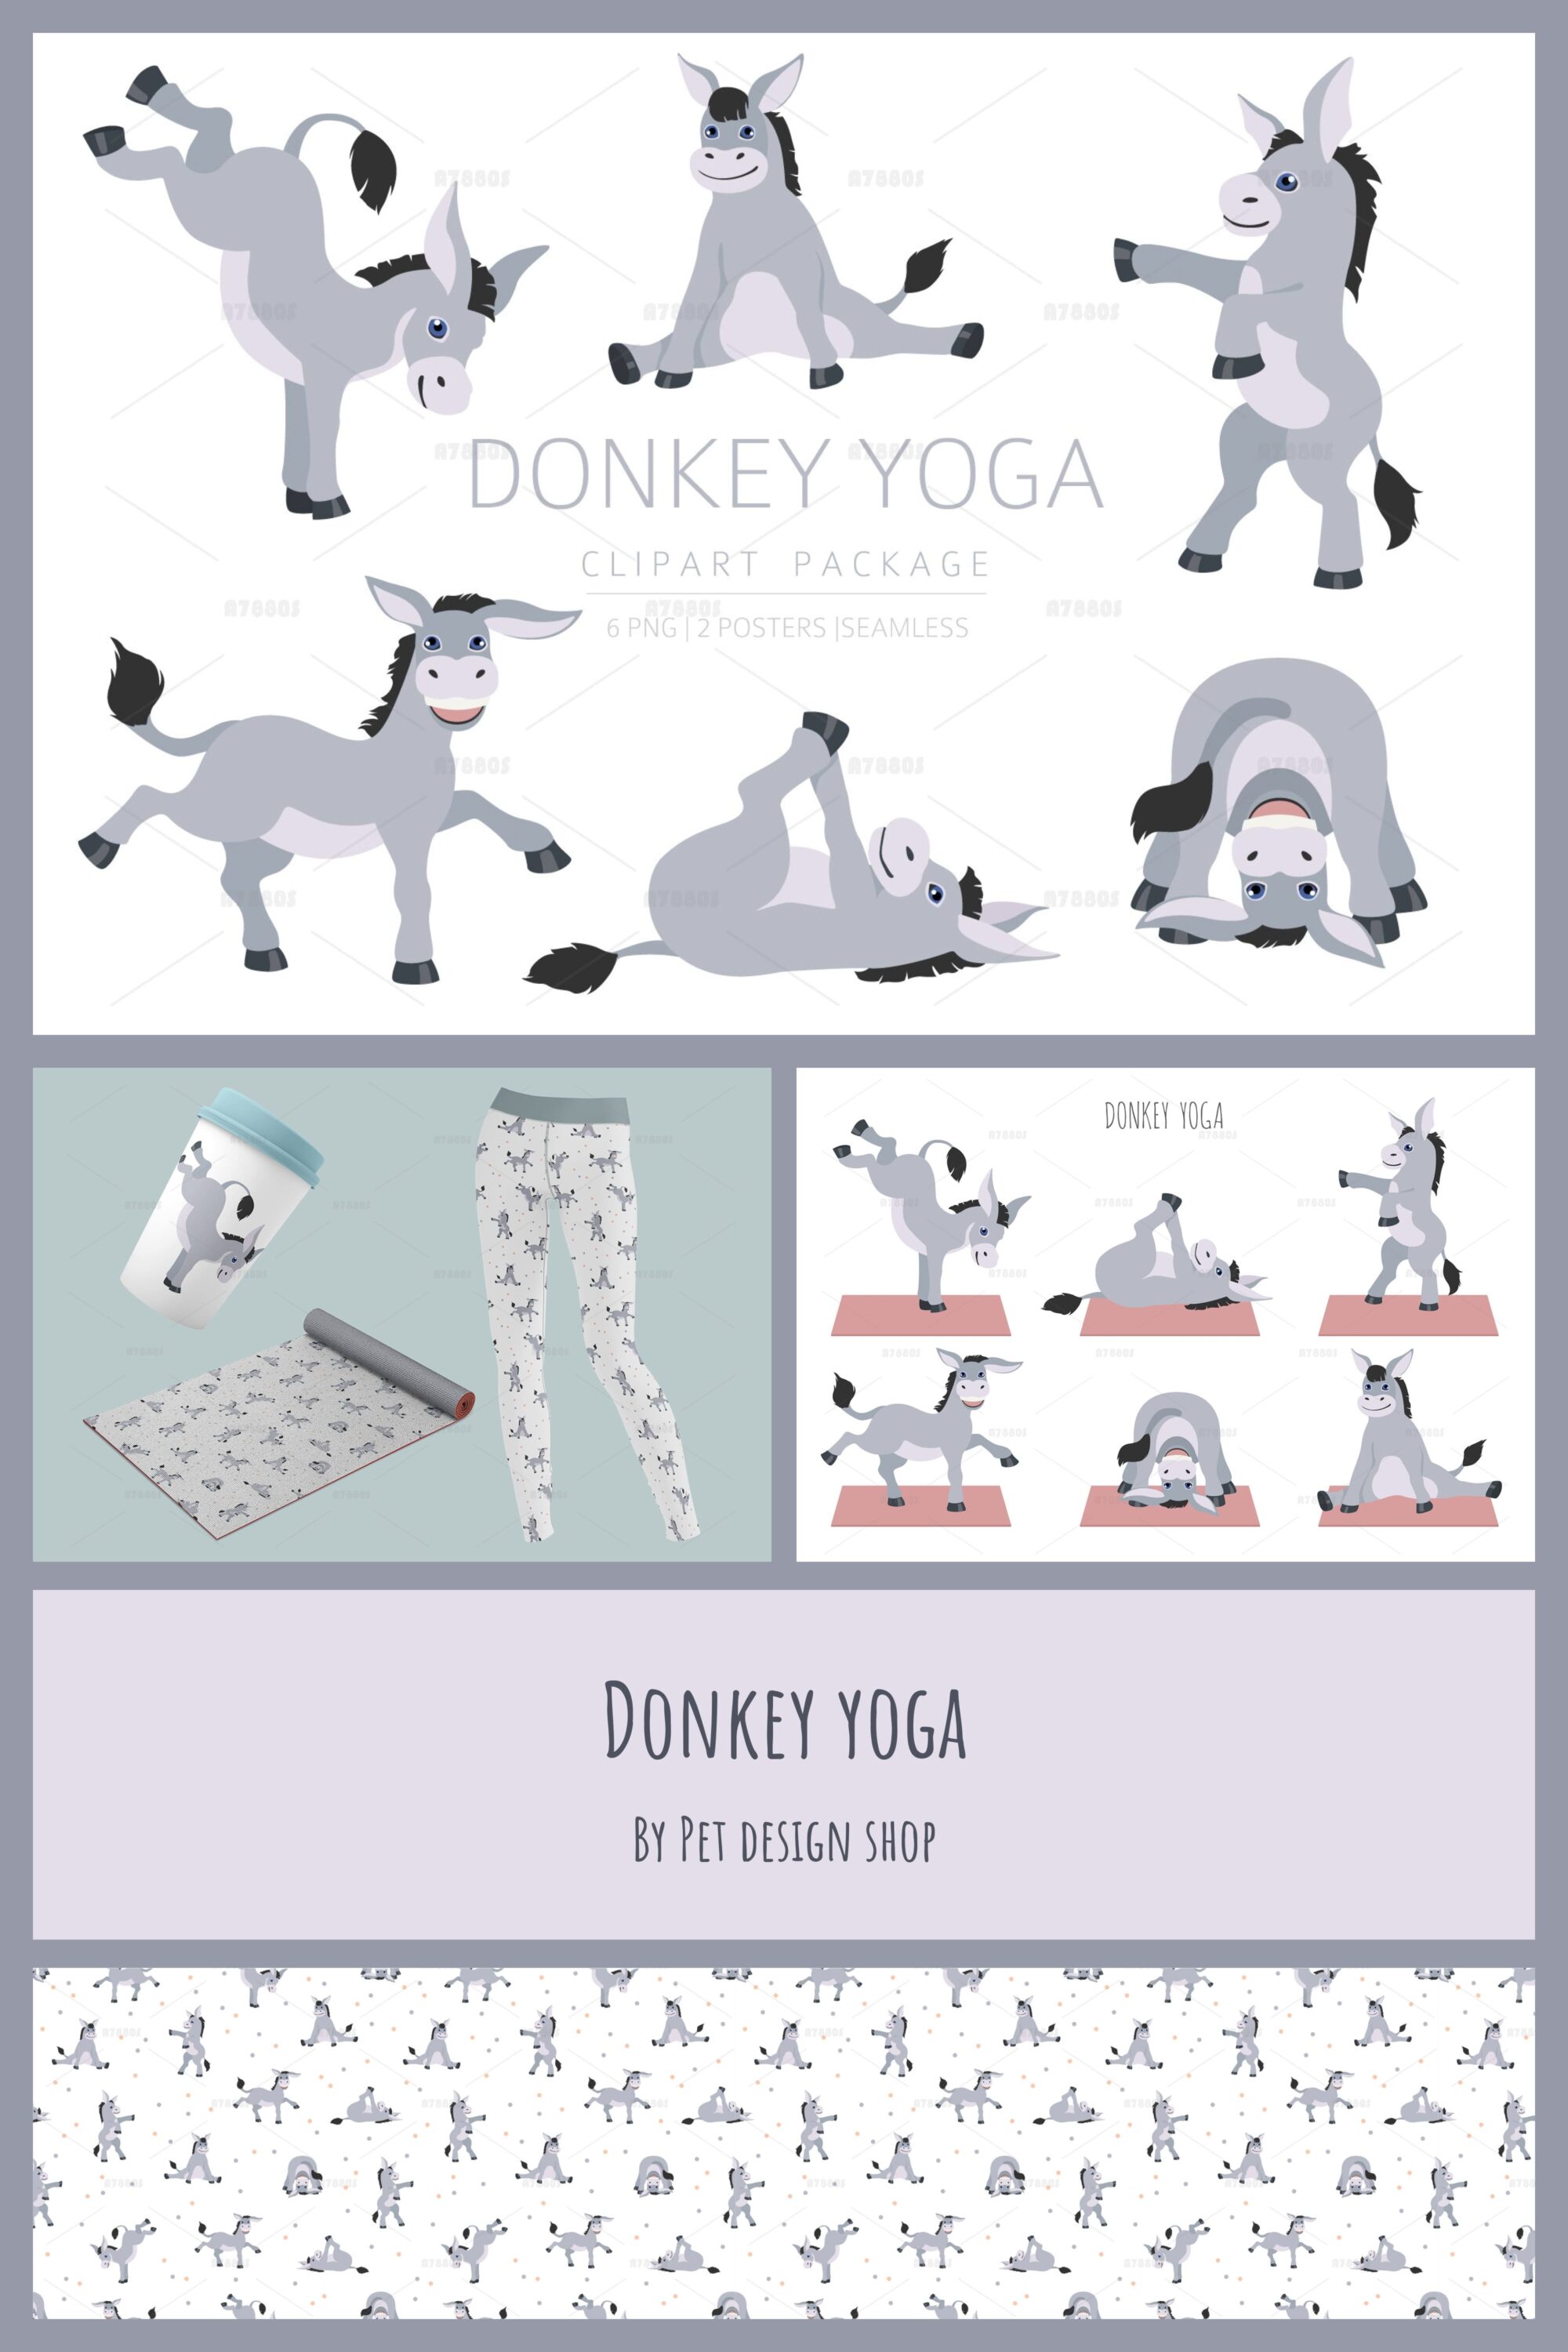 donkey yoga 03 907